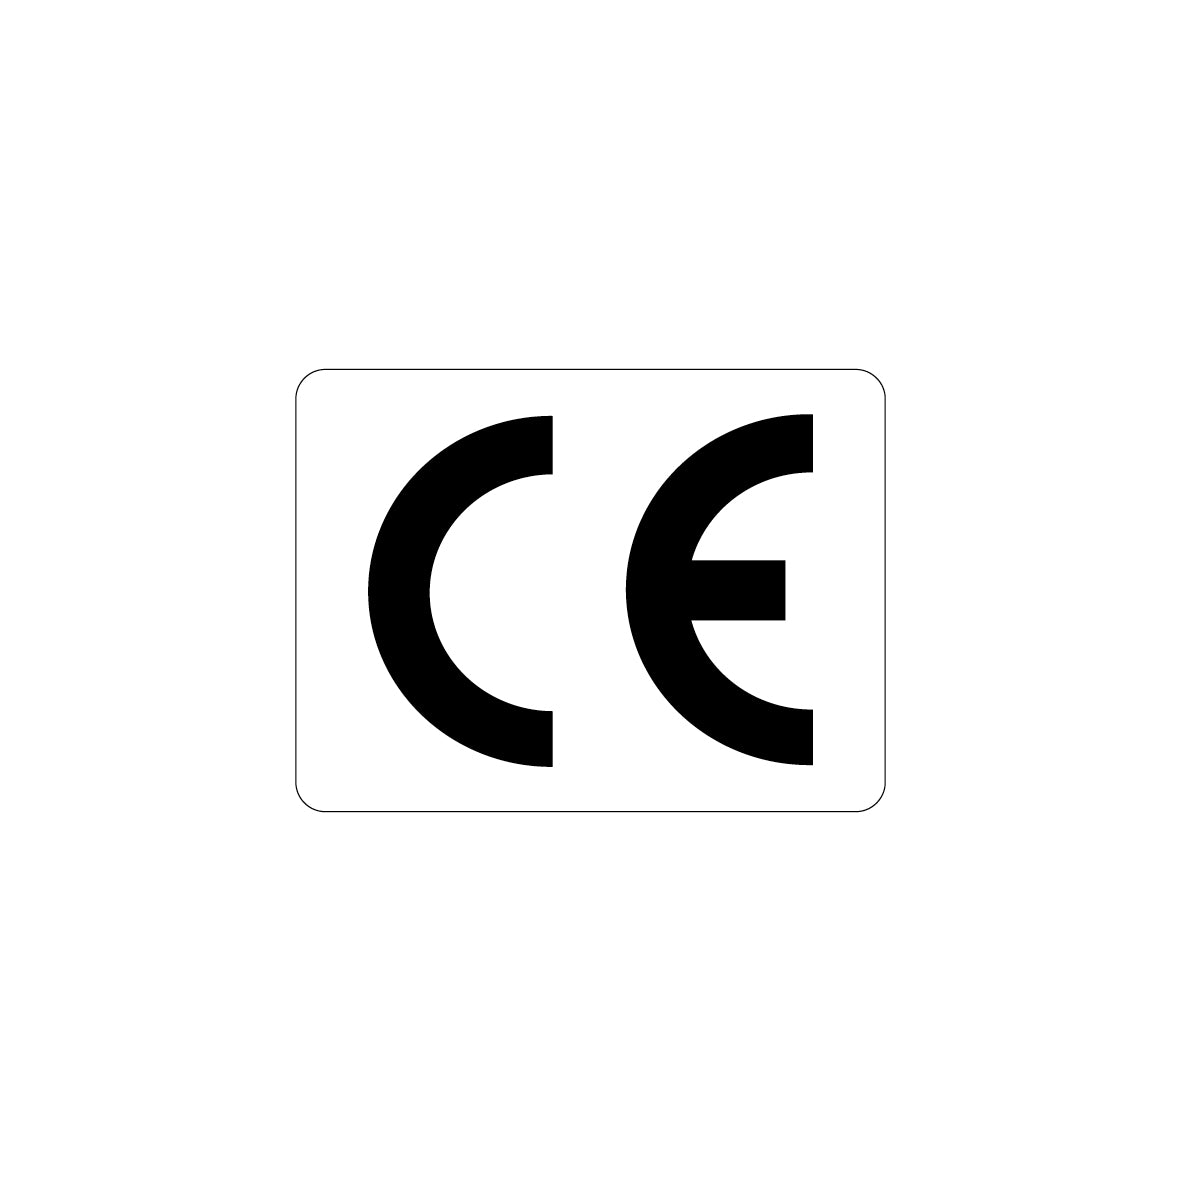 CE-Zeichen, 4.0061, 30 x 25 mm, Schrifthöhe 20 mm, FO, auf Bogen = 25 Stk., weiss/schwarz, Einheit 100 Stk.